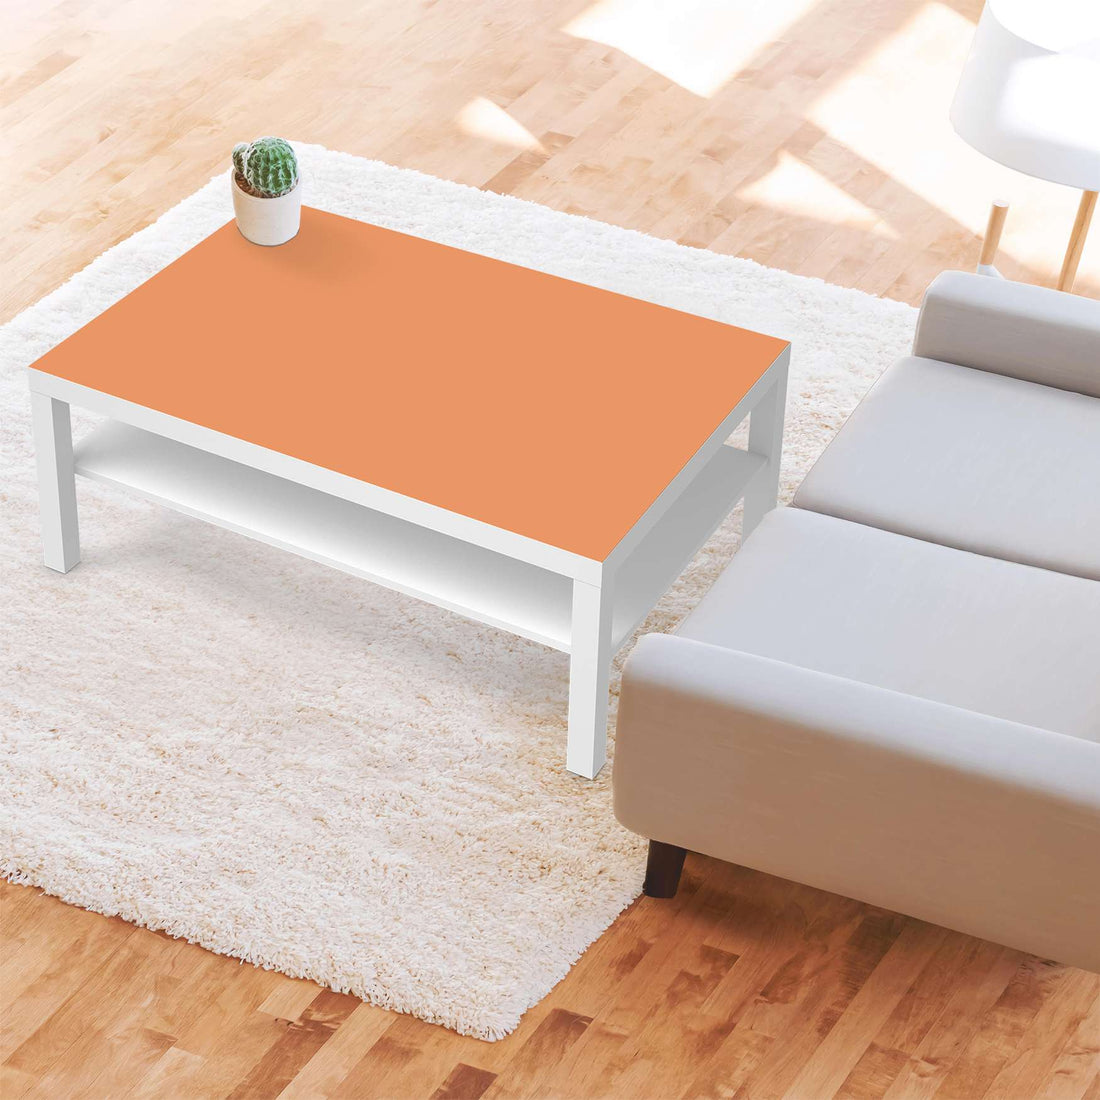 Klebefolie Orange Light - IKEA Lack Tisch 118x78 cm - Wohnzimmer